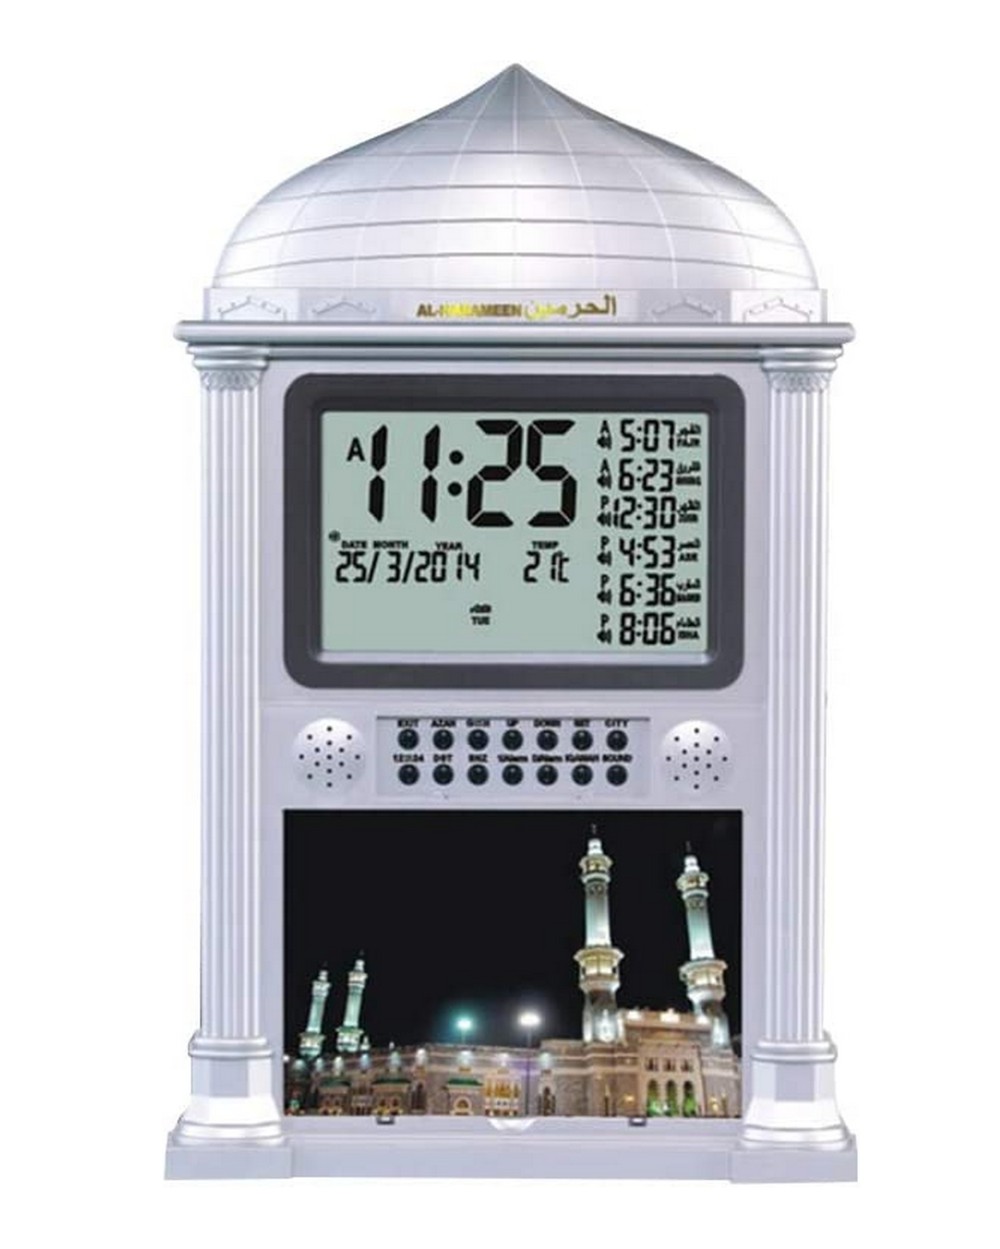 Horloge Adhan Al harameen